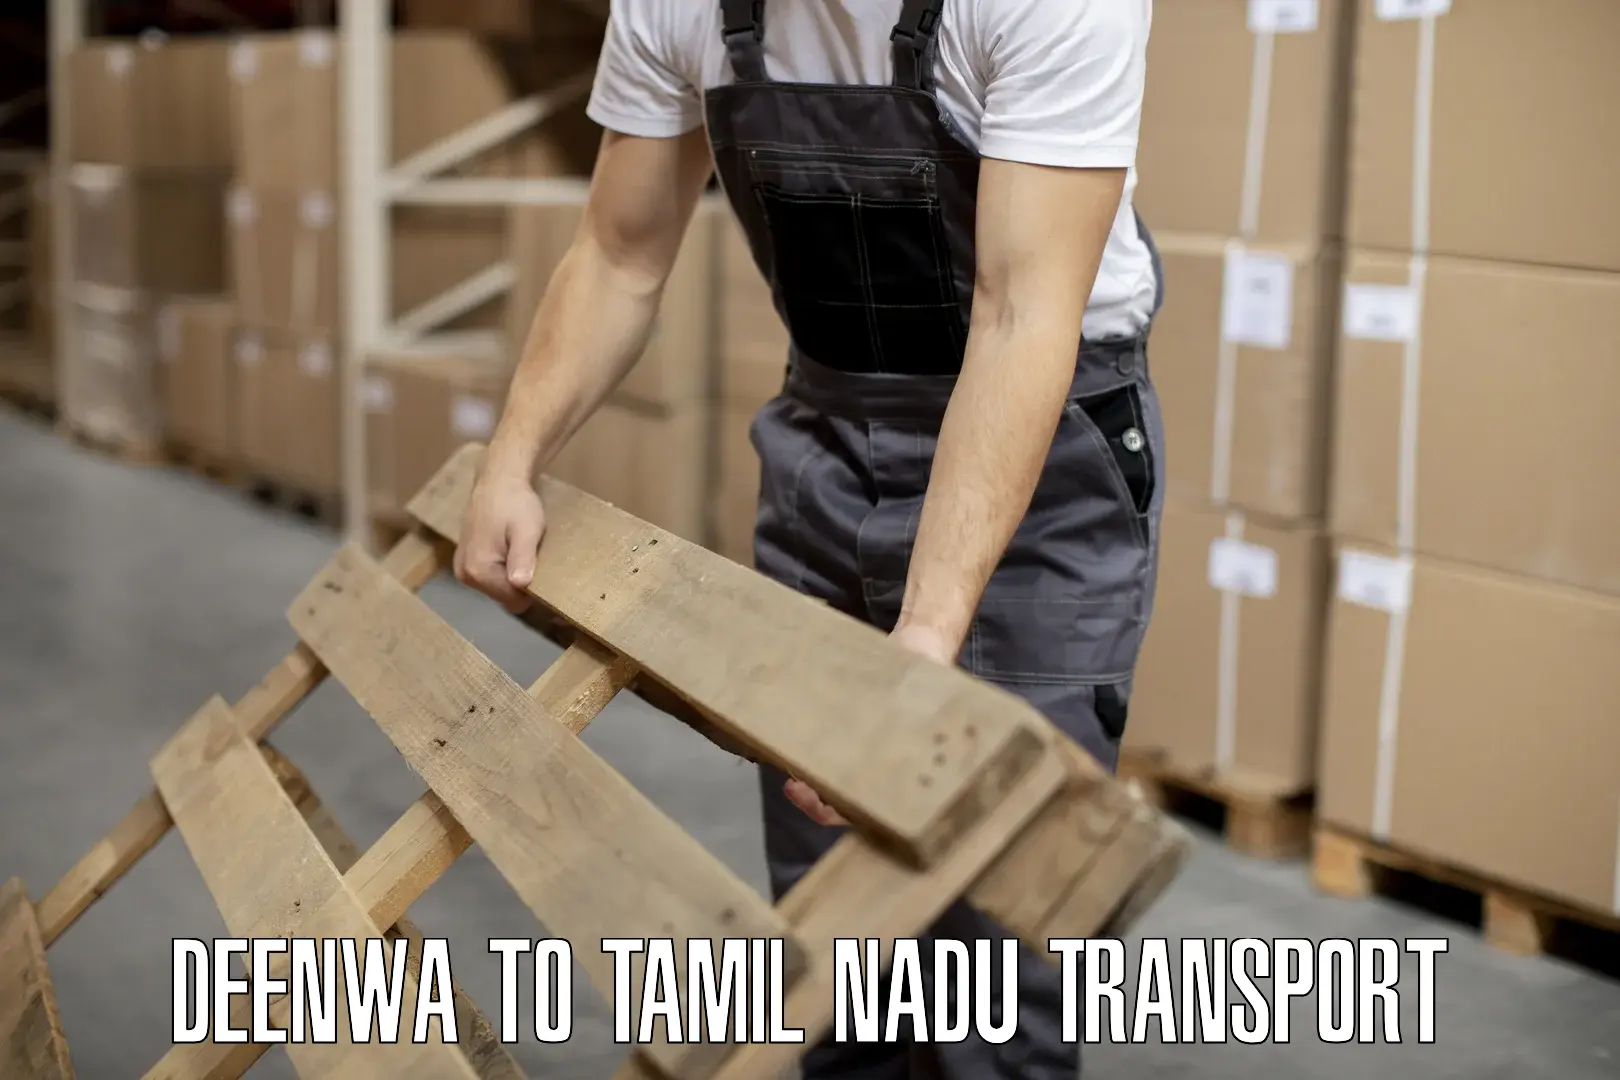 Road transport online services Deenwa to Tirunelveli